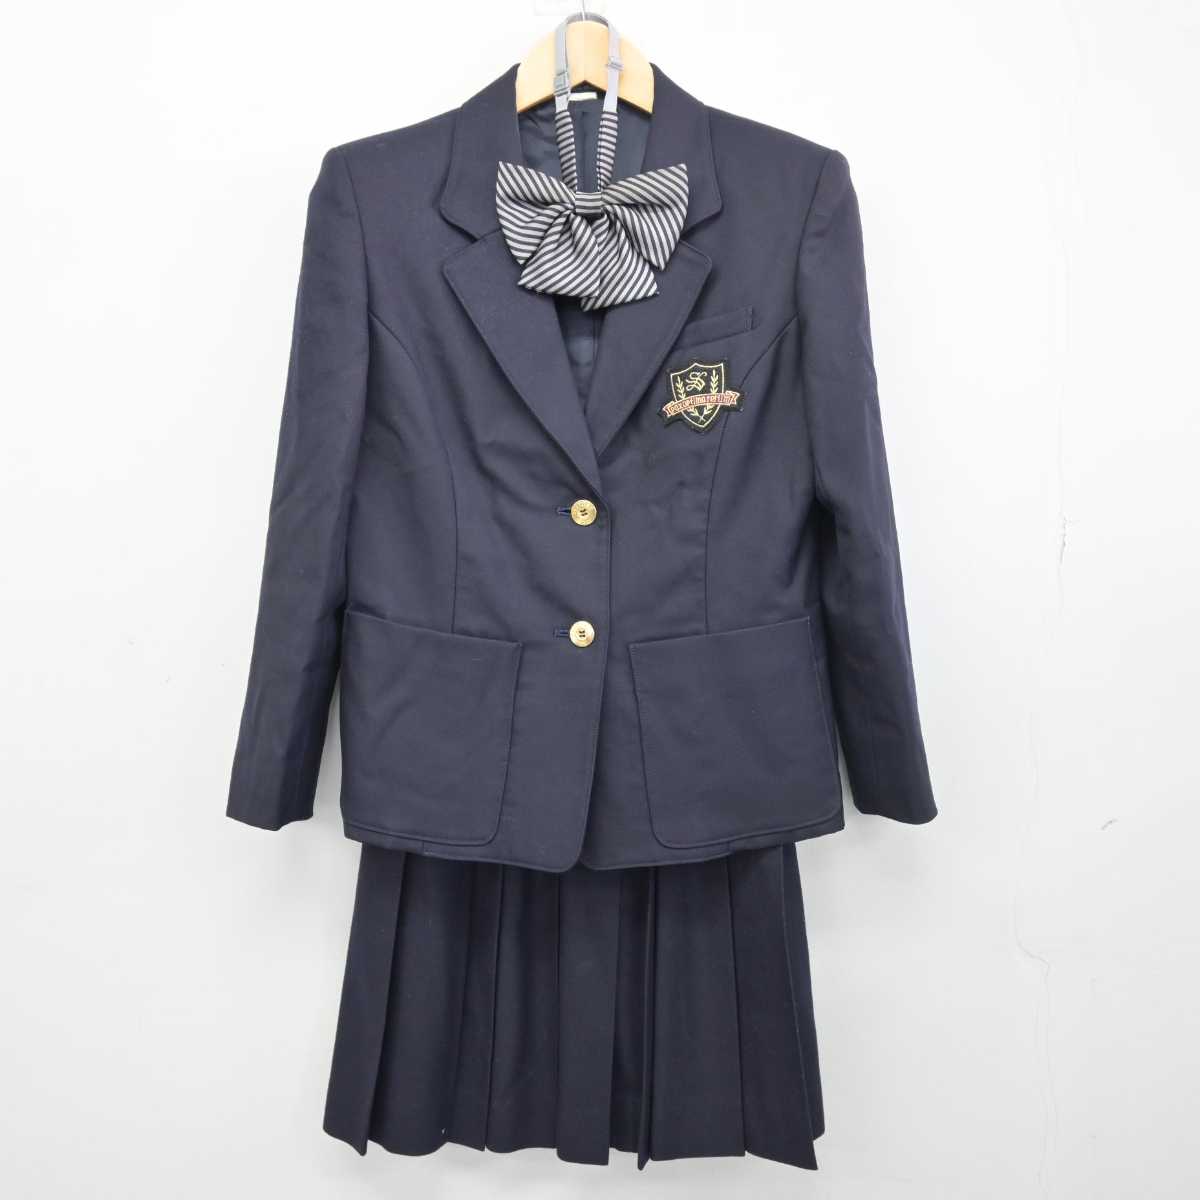 日本福祉大学附属高校の制服 ブレザー - ジャケット